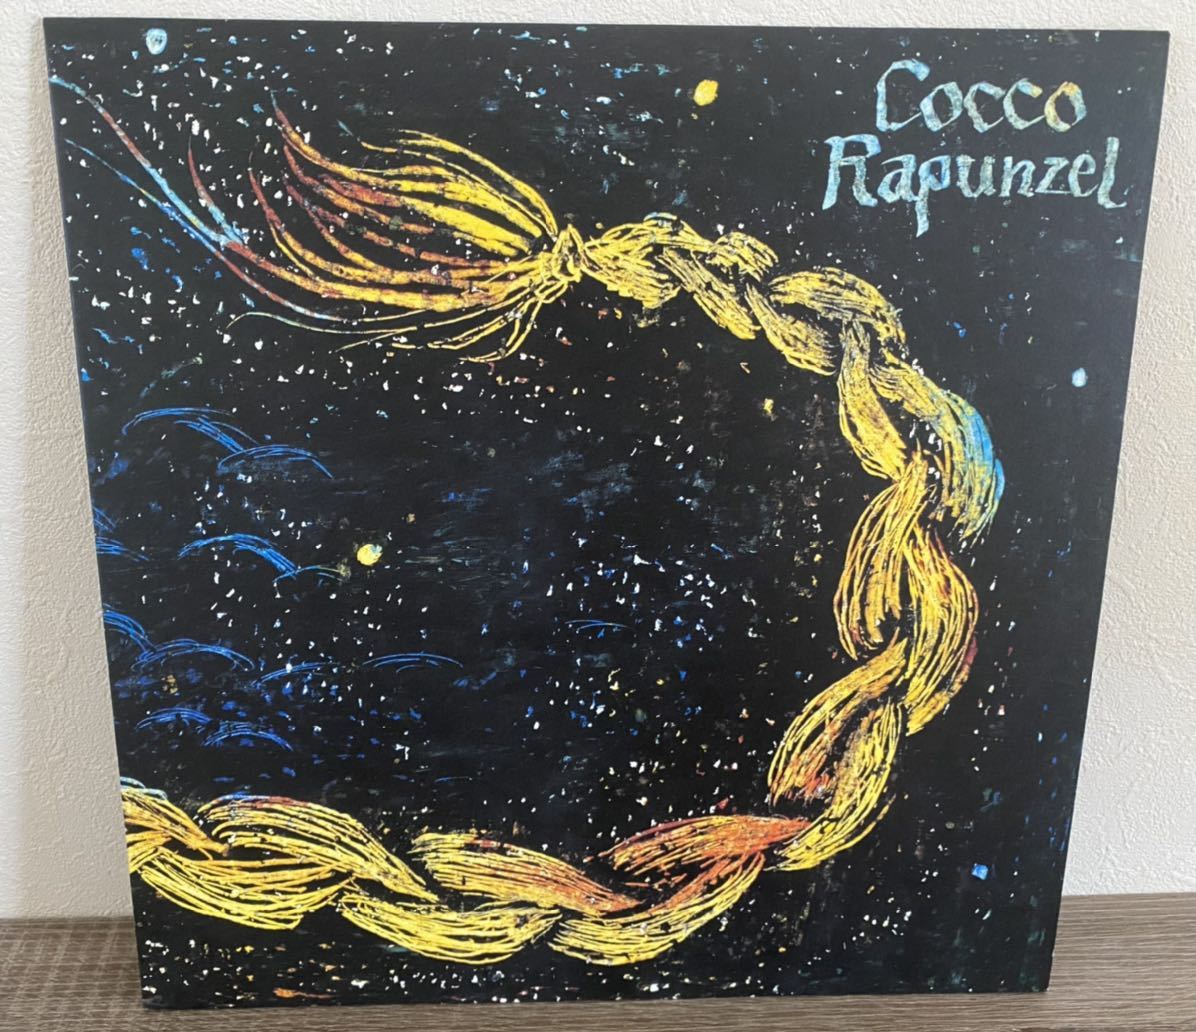 ヤフオク! -「cocco」(レコード) の落札相場・落札価格